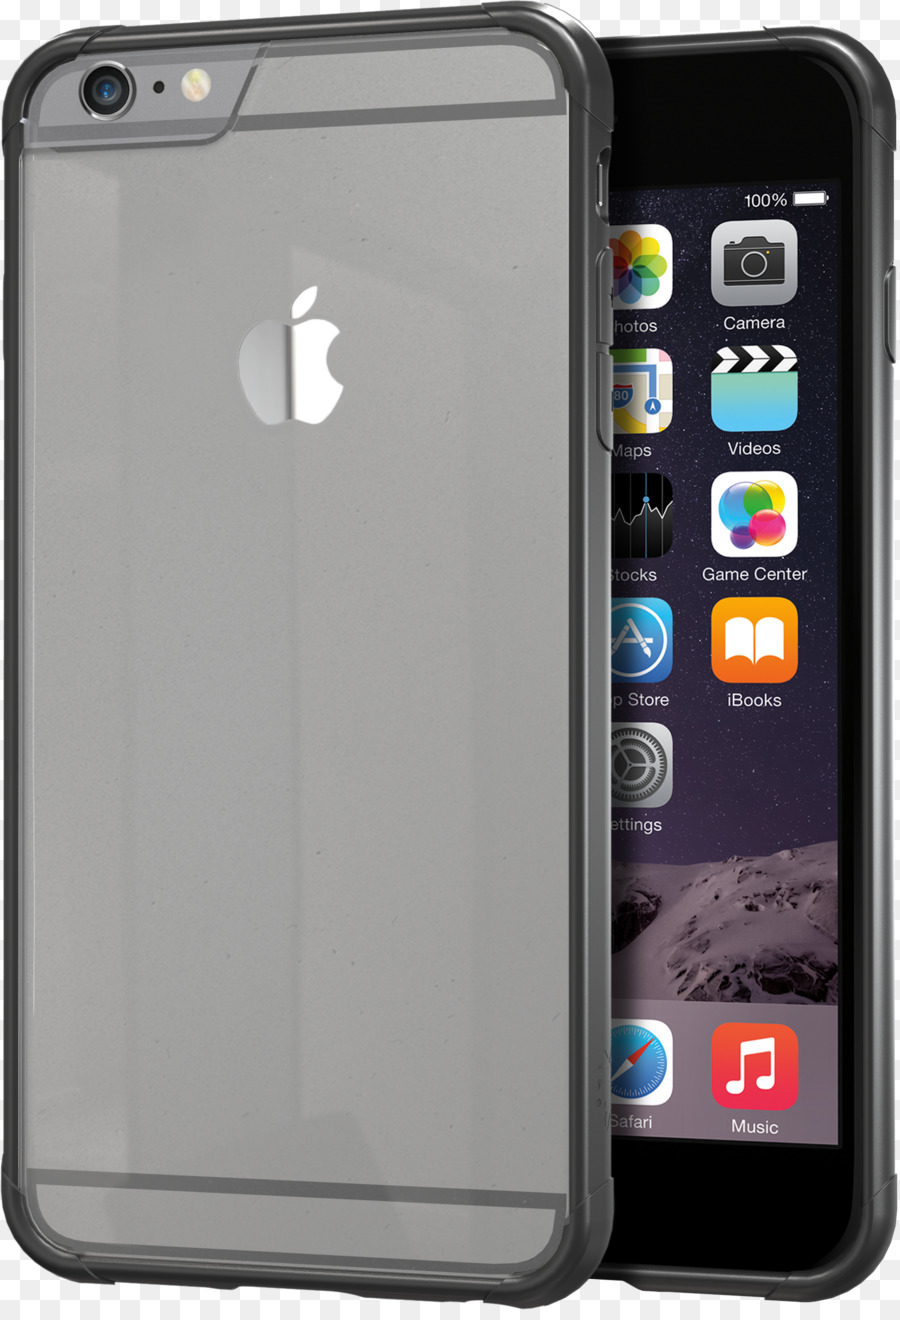 iPhone 6 Plus di Apple iPhone 7 Plus, iPhone 6s Plus Smartphone - Mela